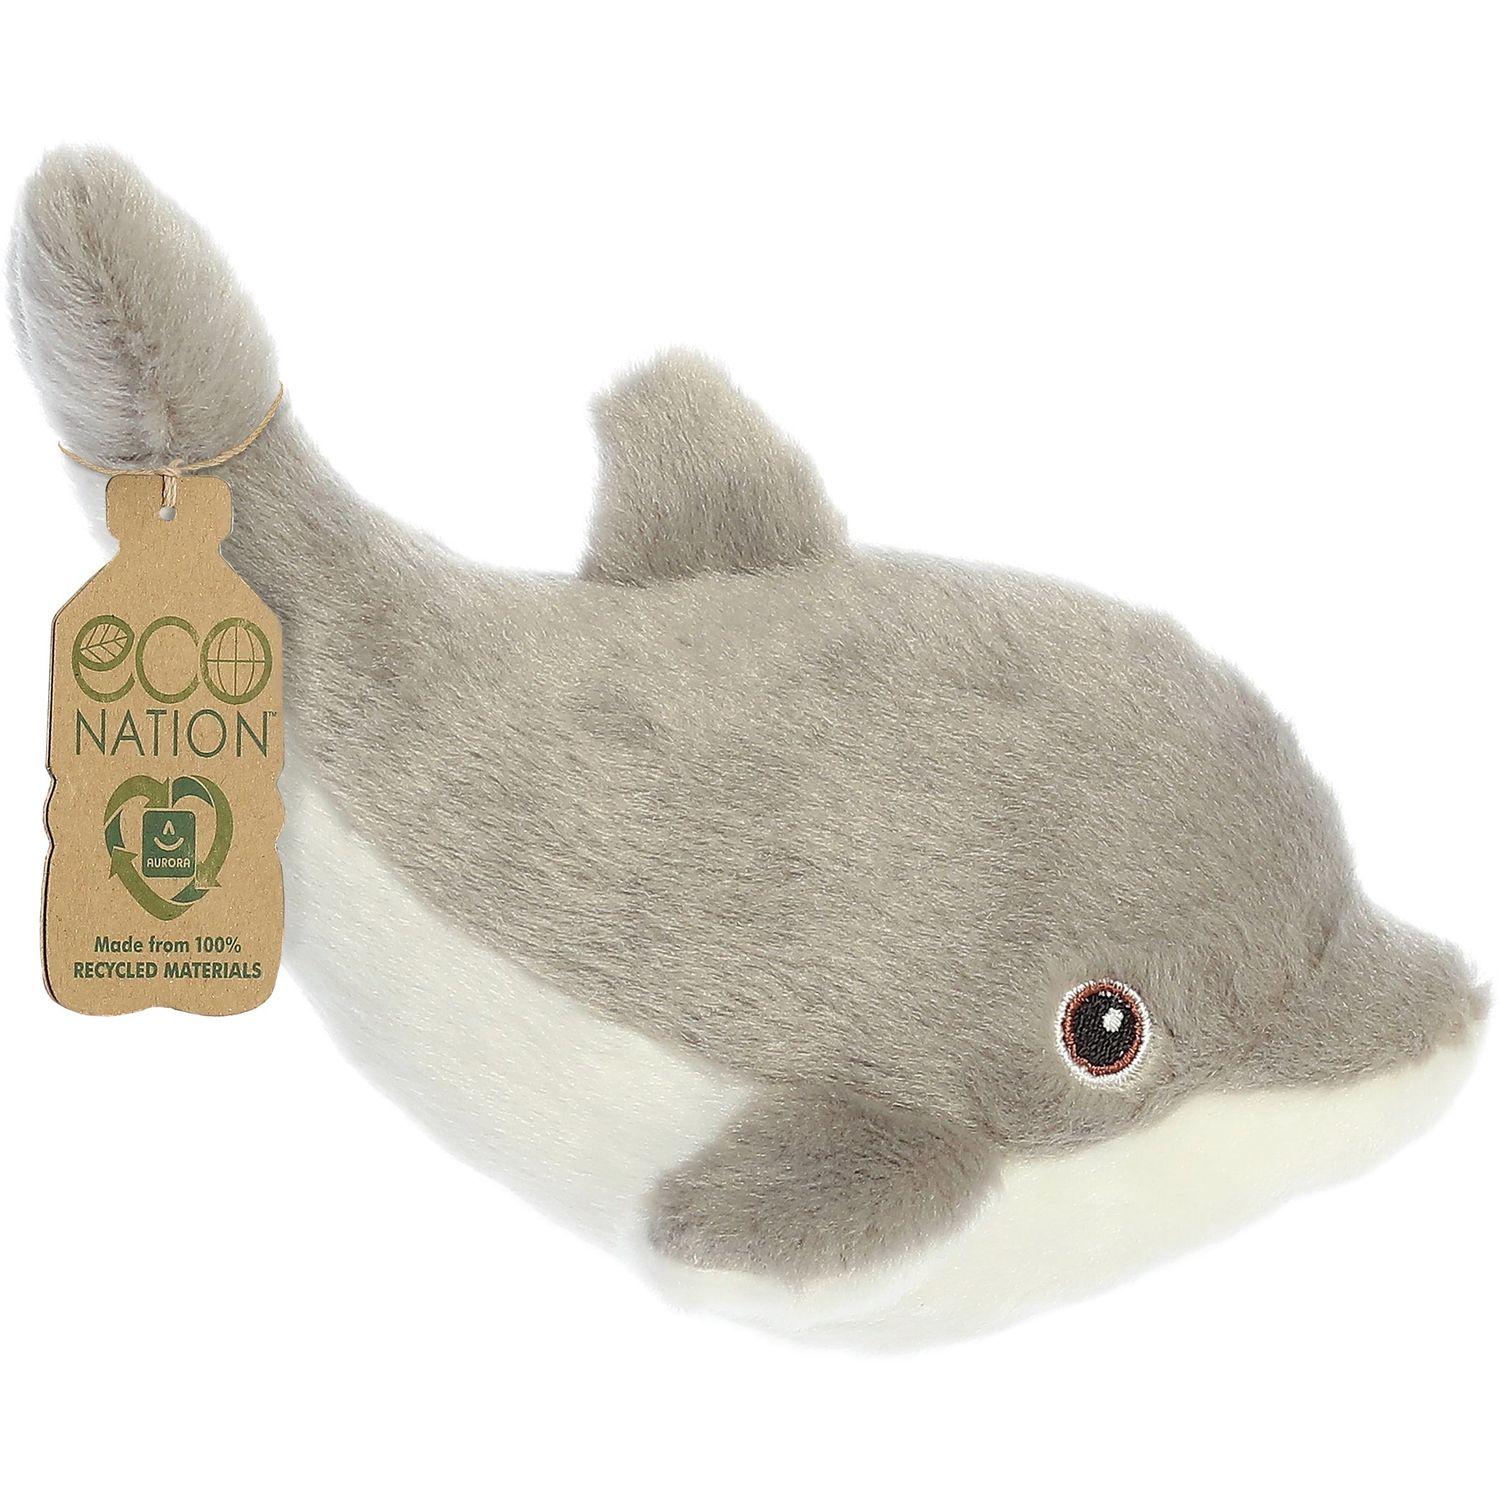 М'яка іграшка Aurora Eco Nation Дельфін, 38 см, сіра (200207F) - фото 1